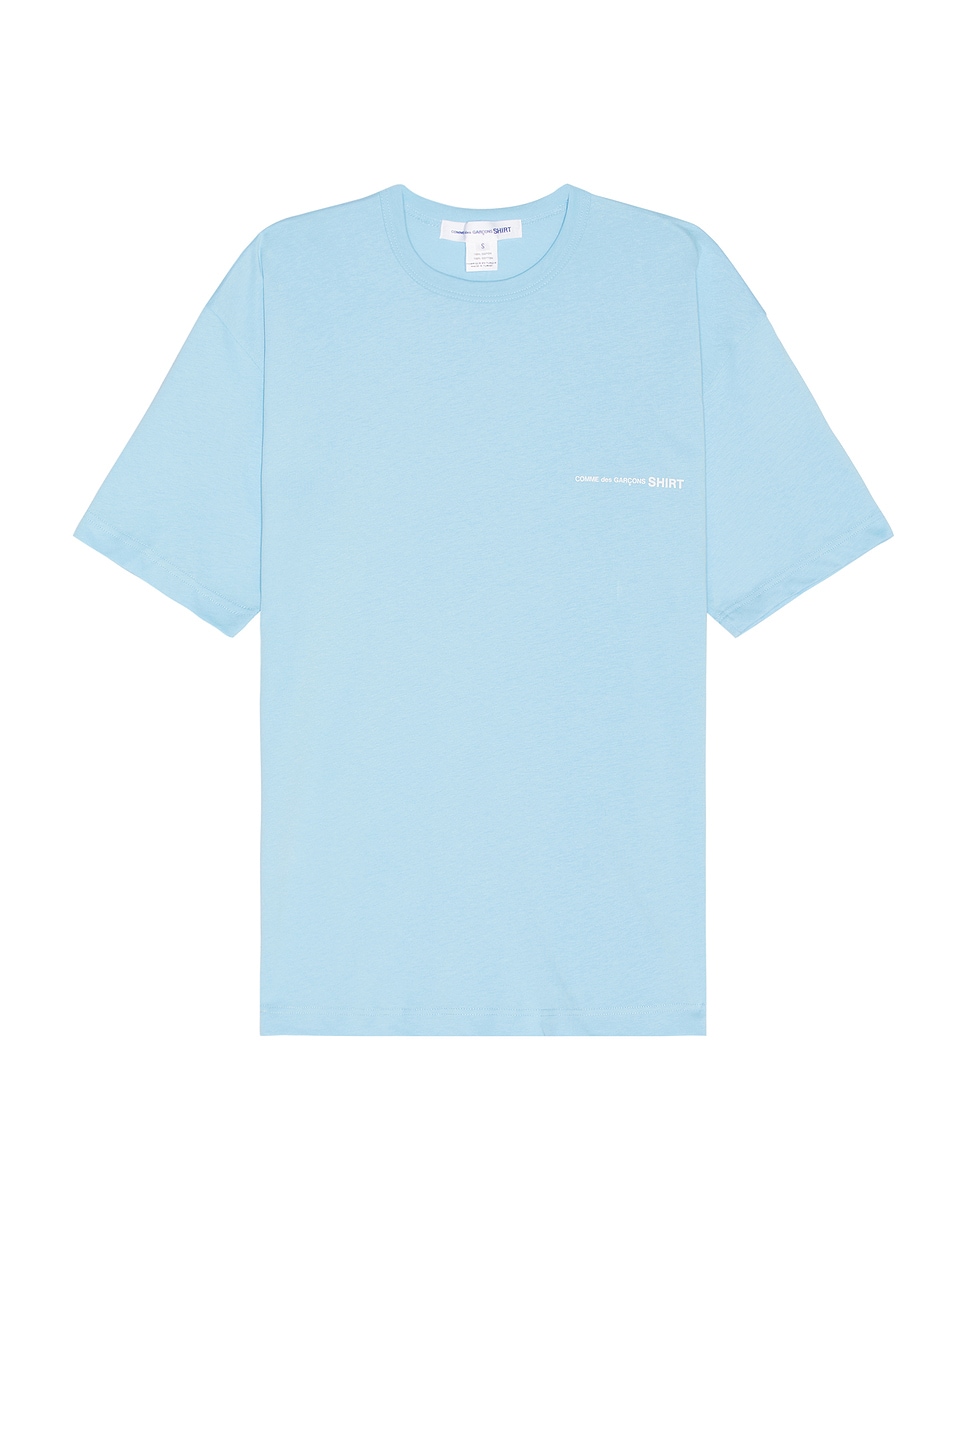 Comme Des Garçons Shirt X Andy Warhol T-shirt In Blue